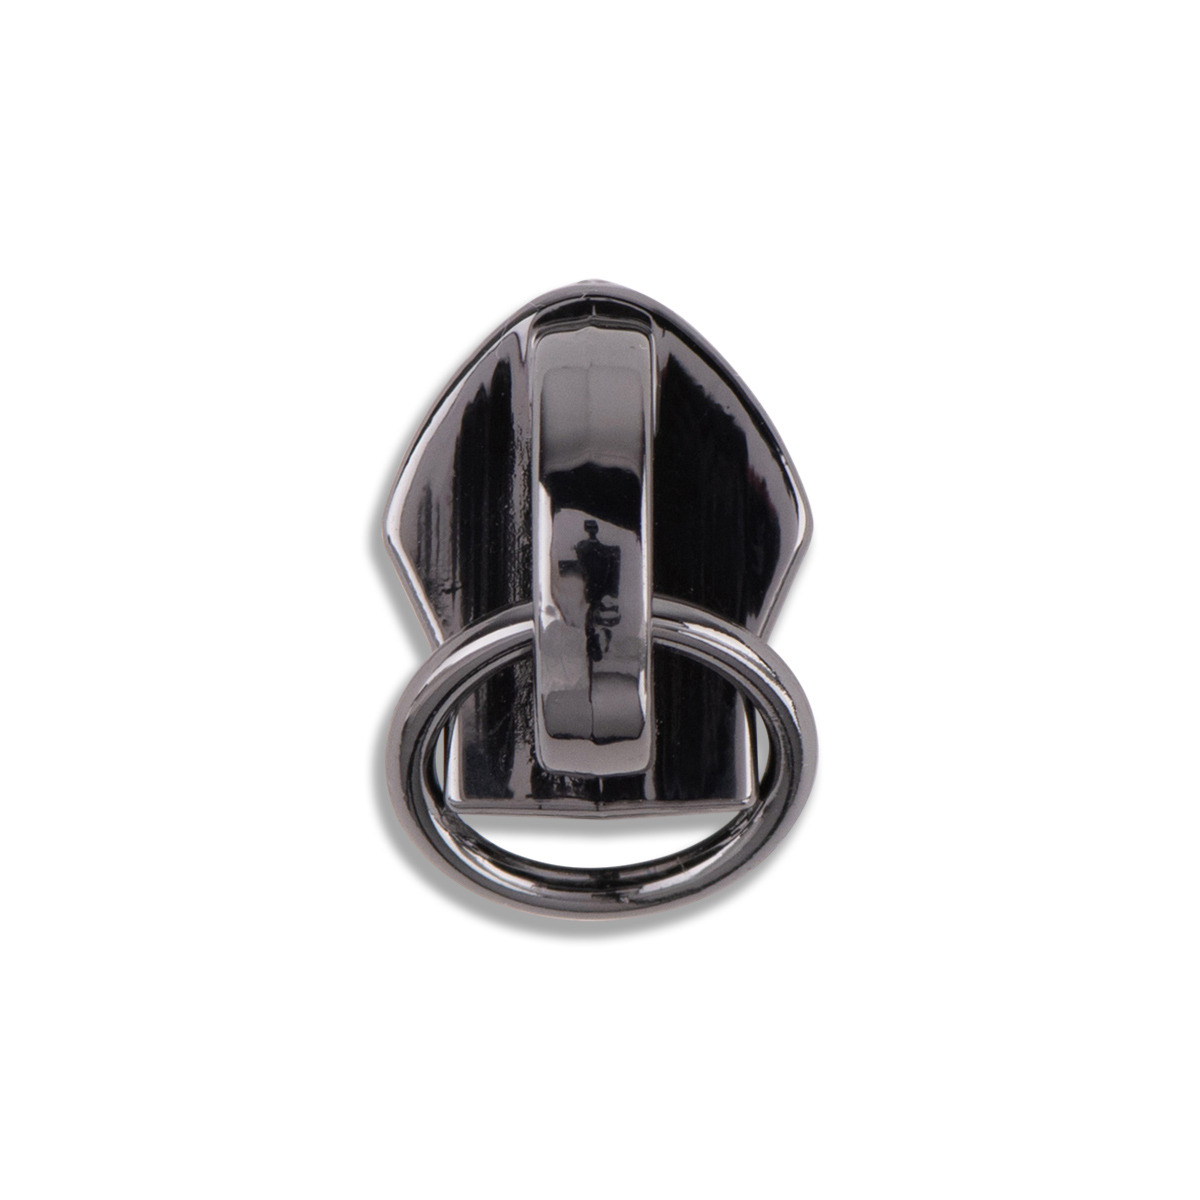 Zipper Repair Kit, Heavy Duty Zipper Pull , High Quality Nickel Brass  Antique Brass Zipper Pull 5 8 